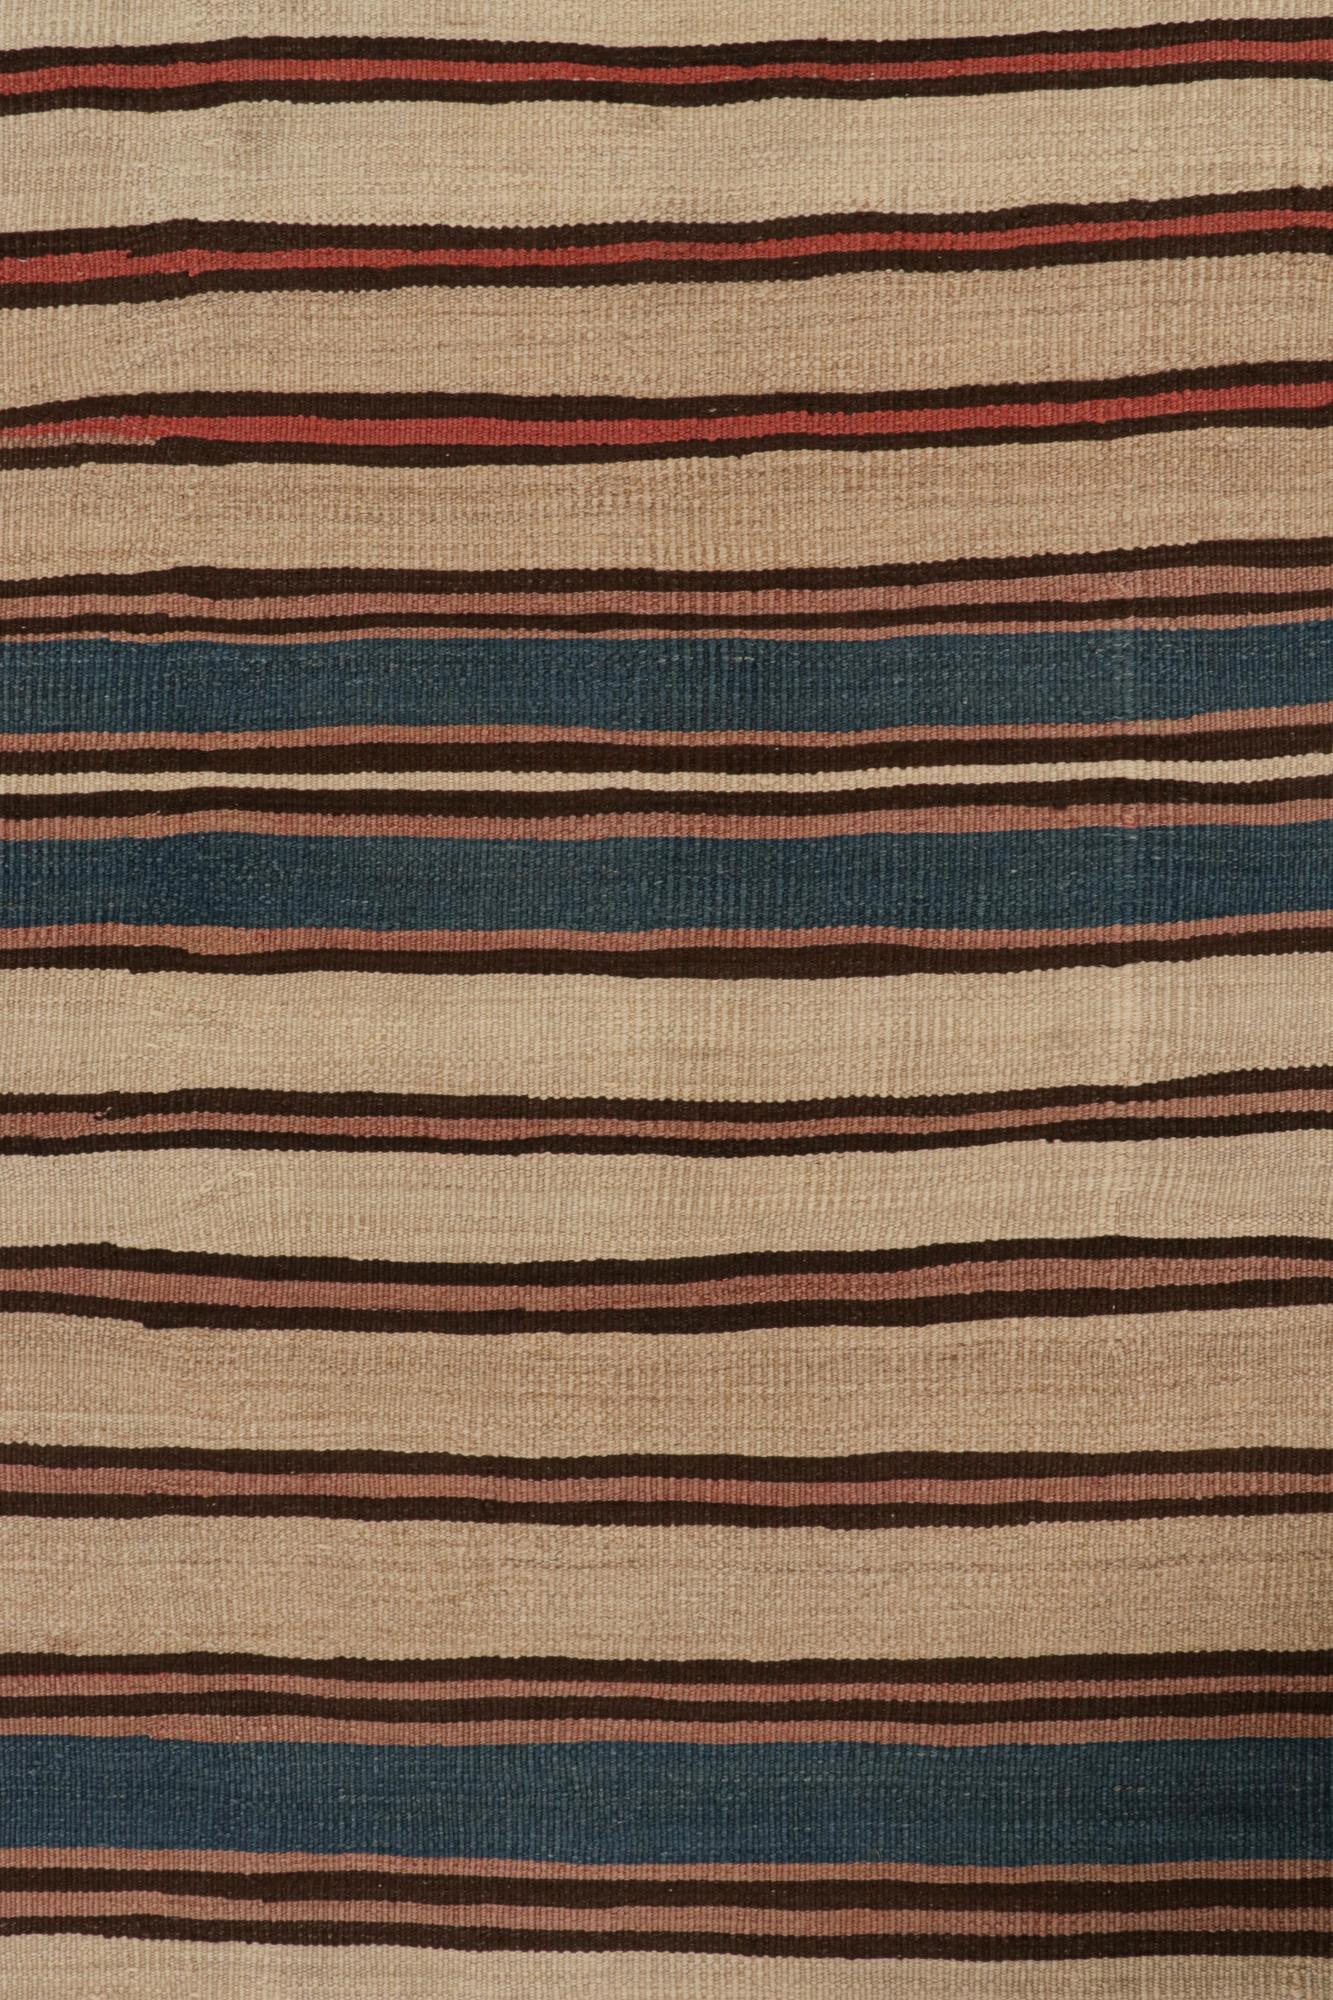 Tribal Vintage Shahsavan Persian Kilim in Beige, Brown & Blue Stripes by Rug & Kilim